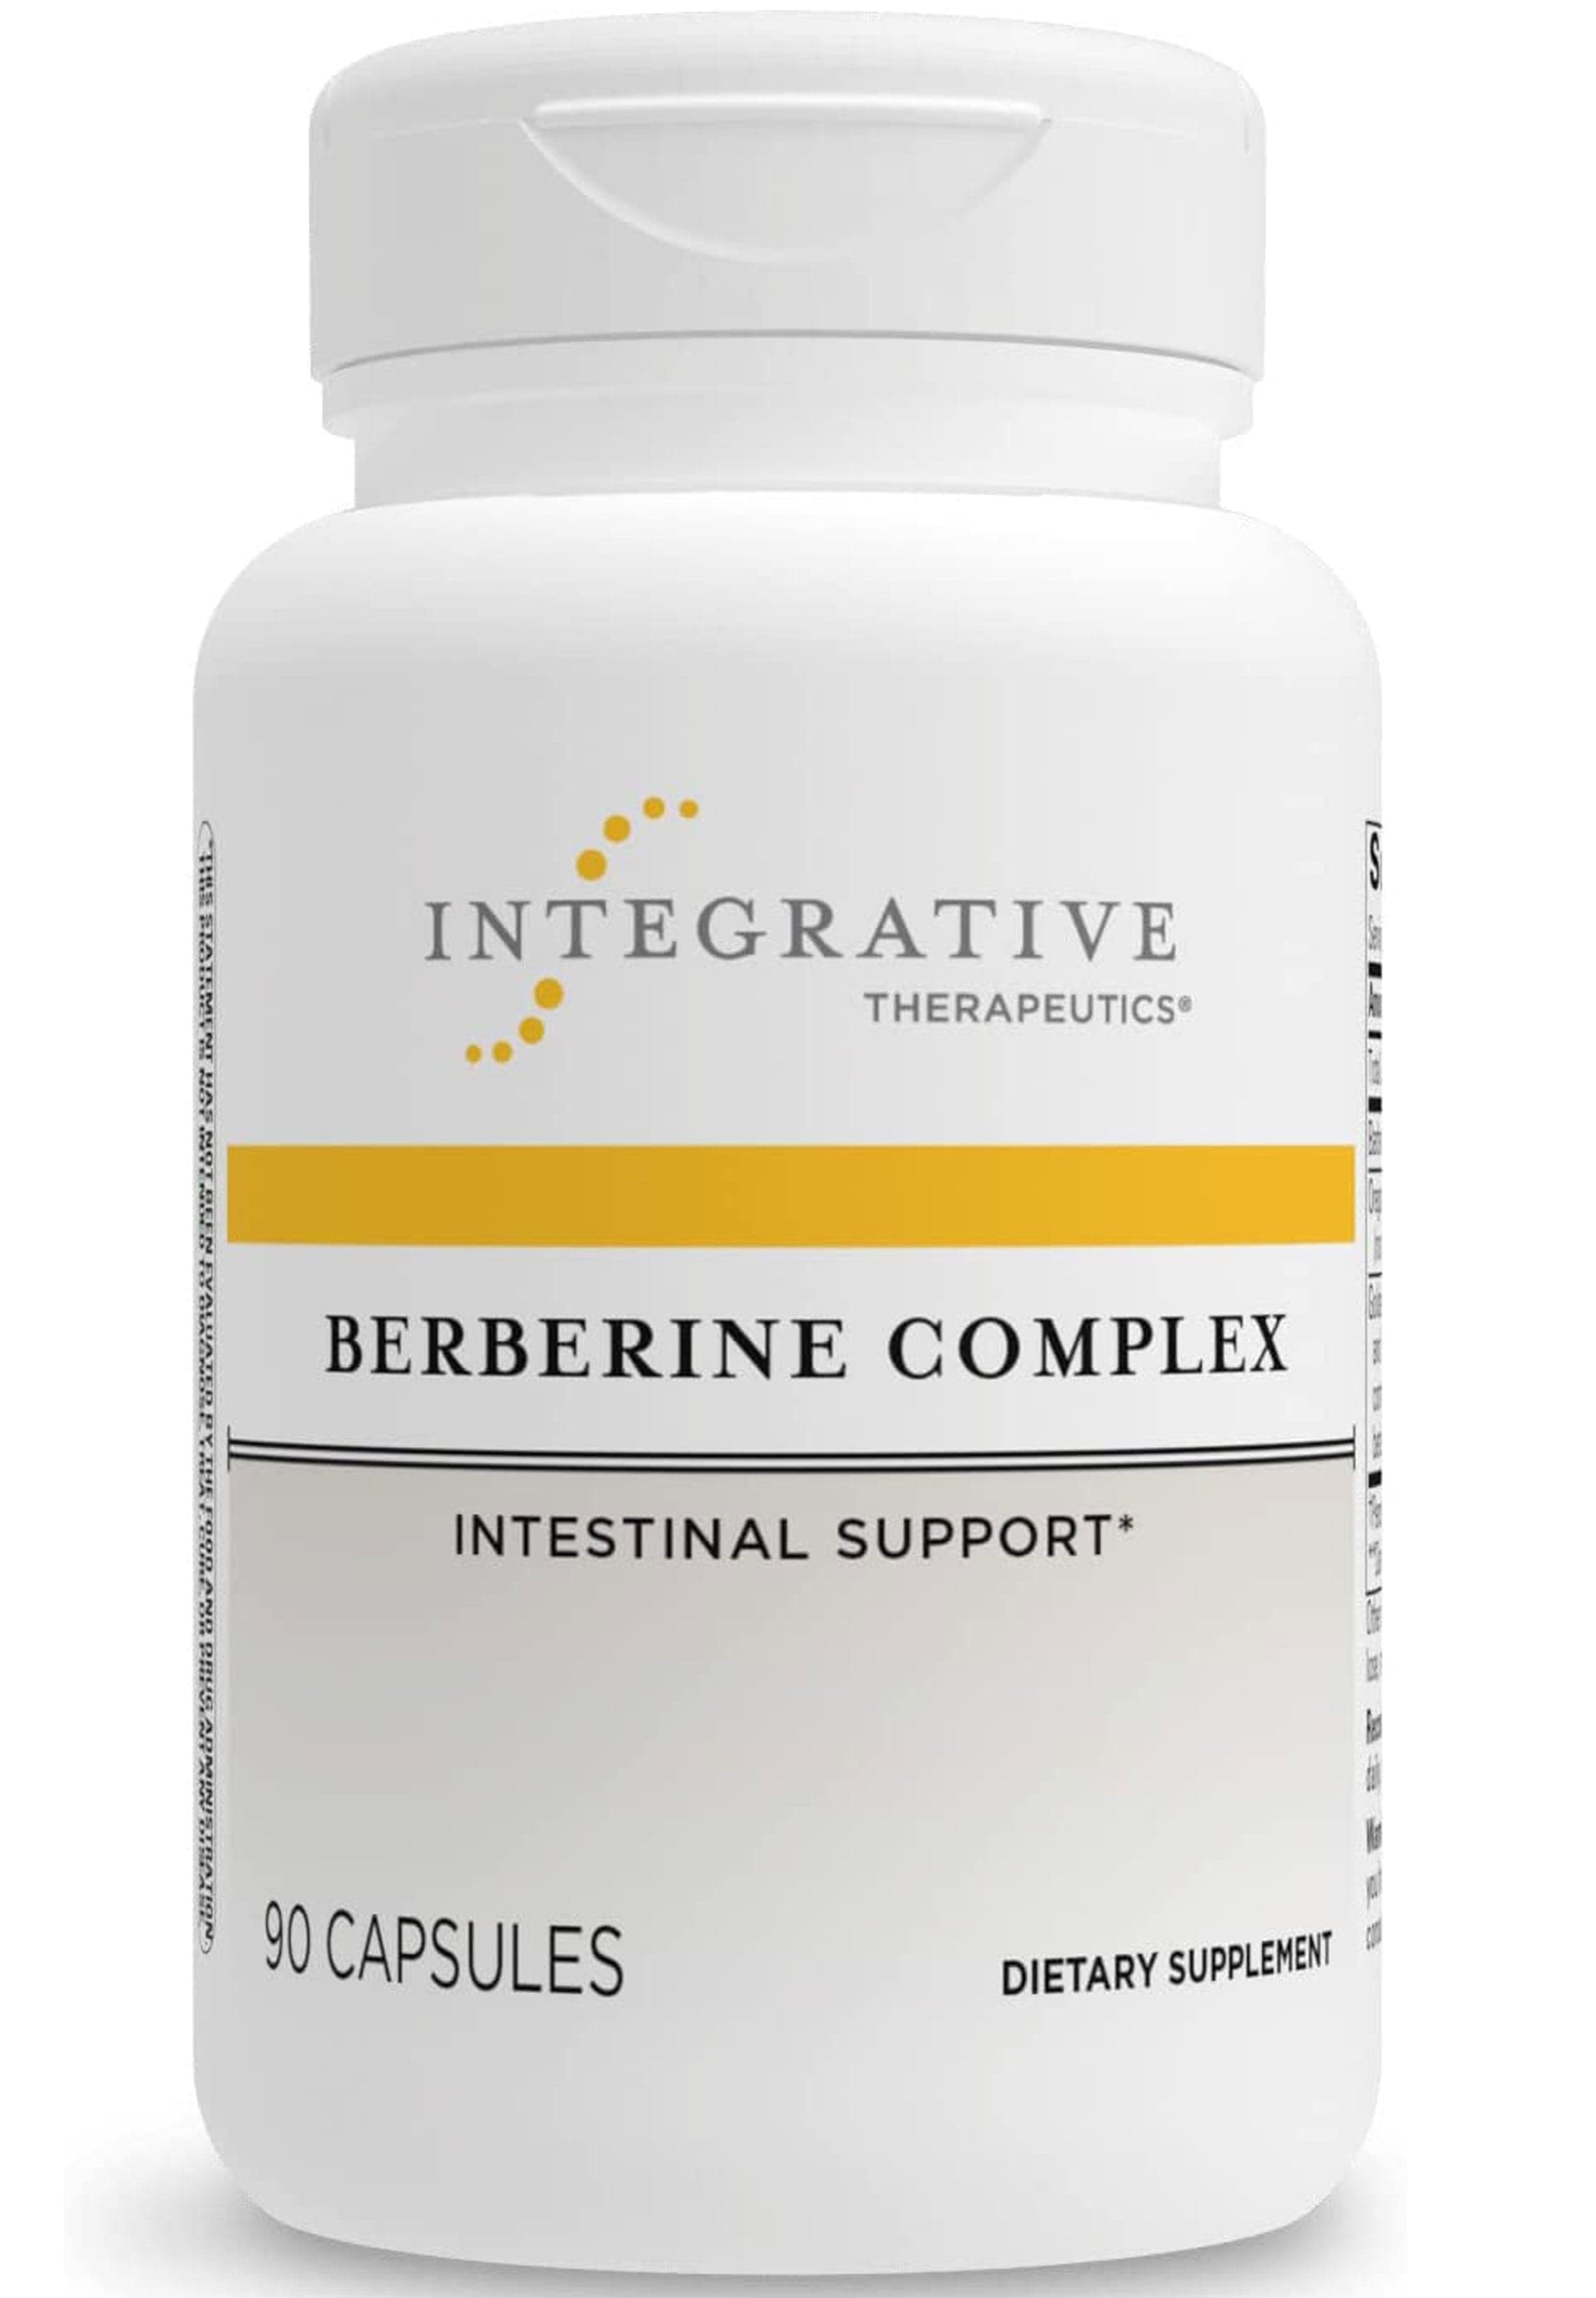 Integrative Therapeutics Berberine Complex